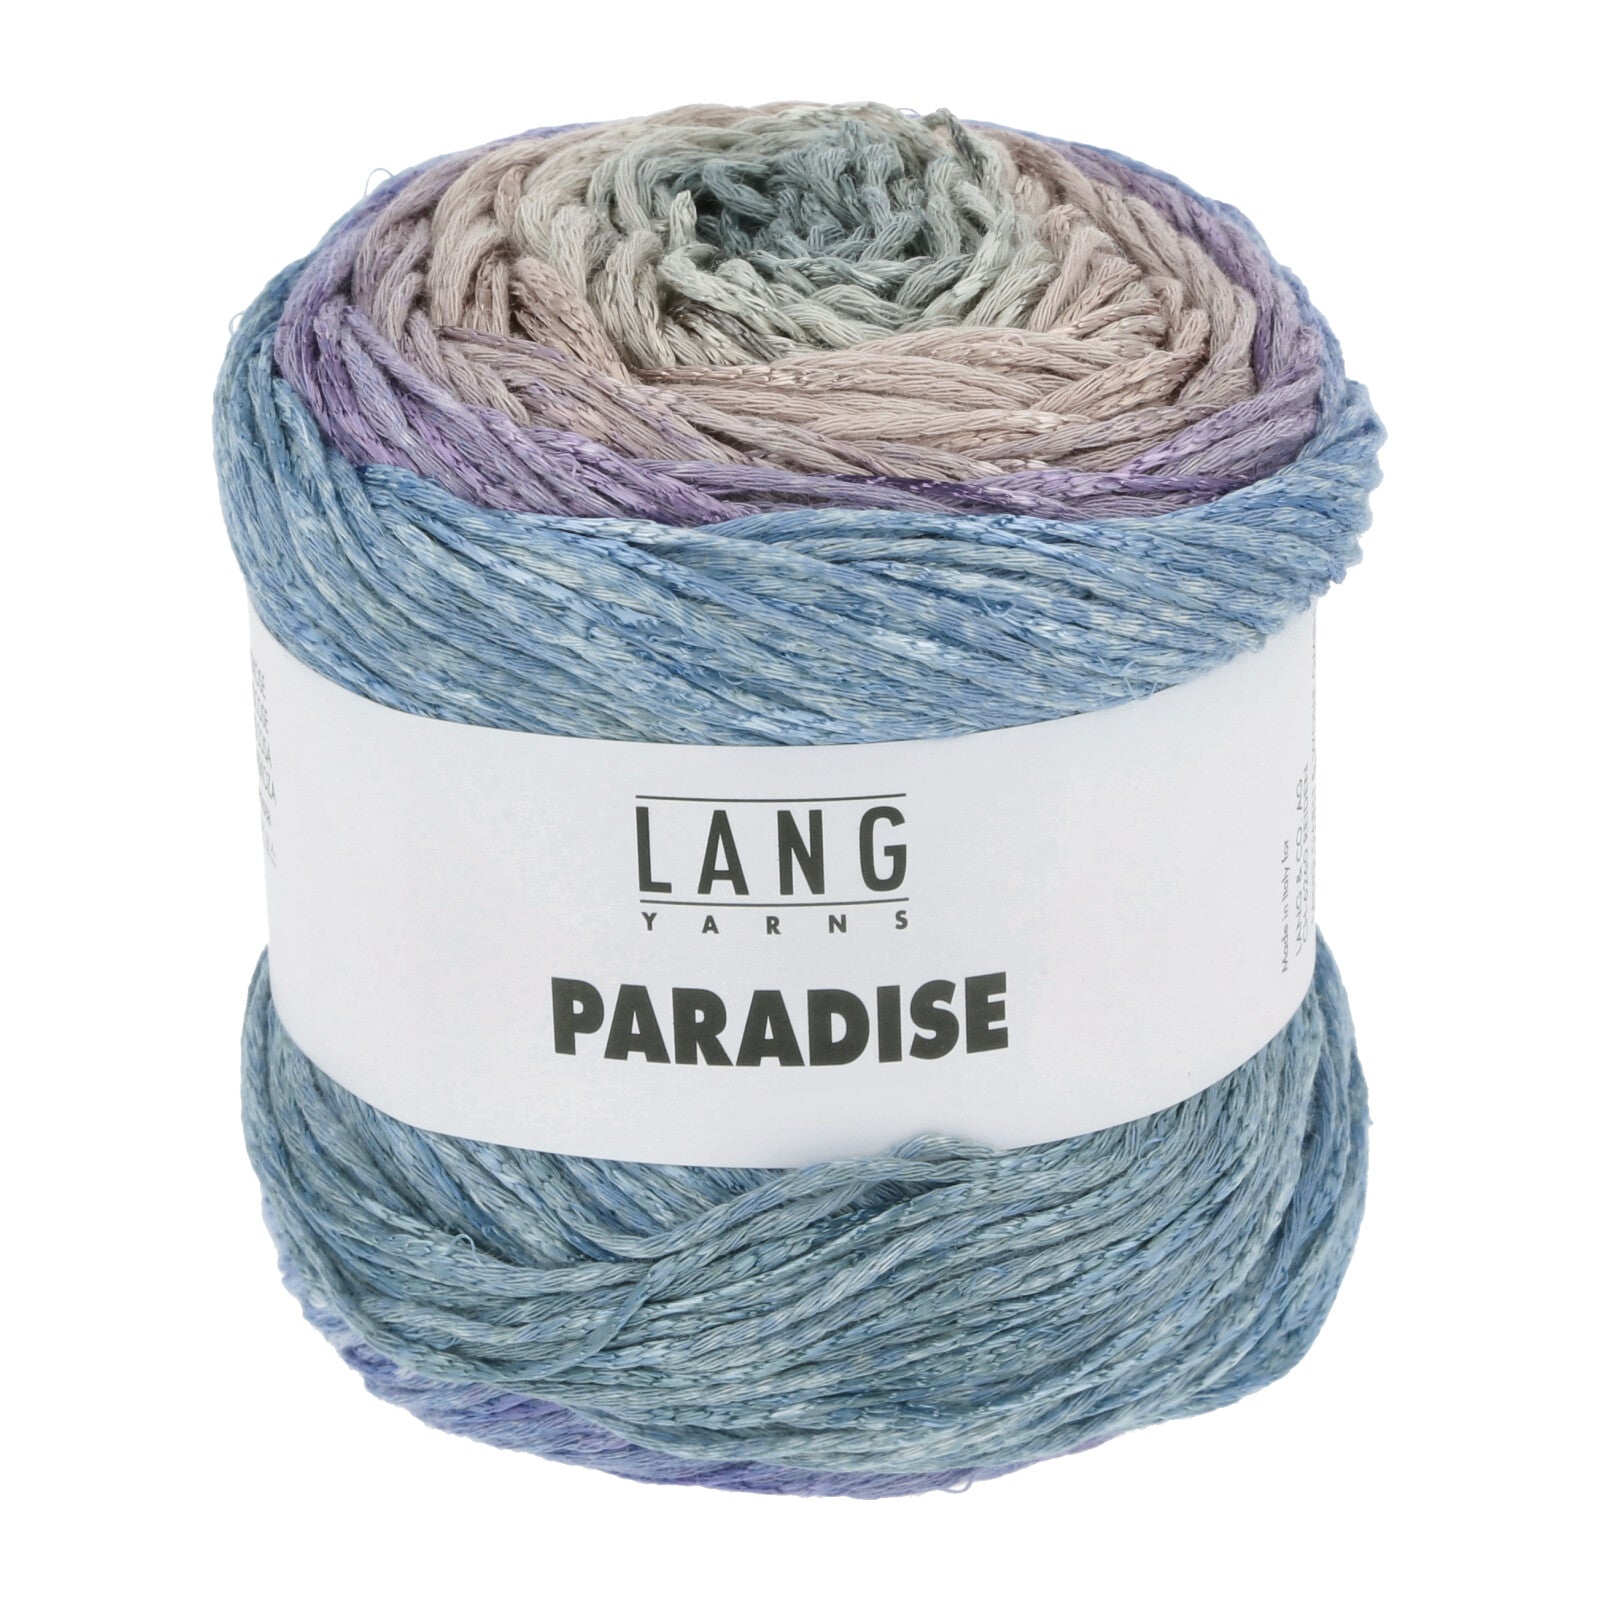 Lang Yarns Paradise yarn color 72